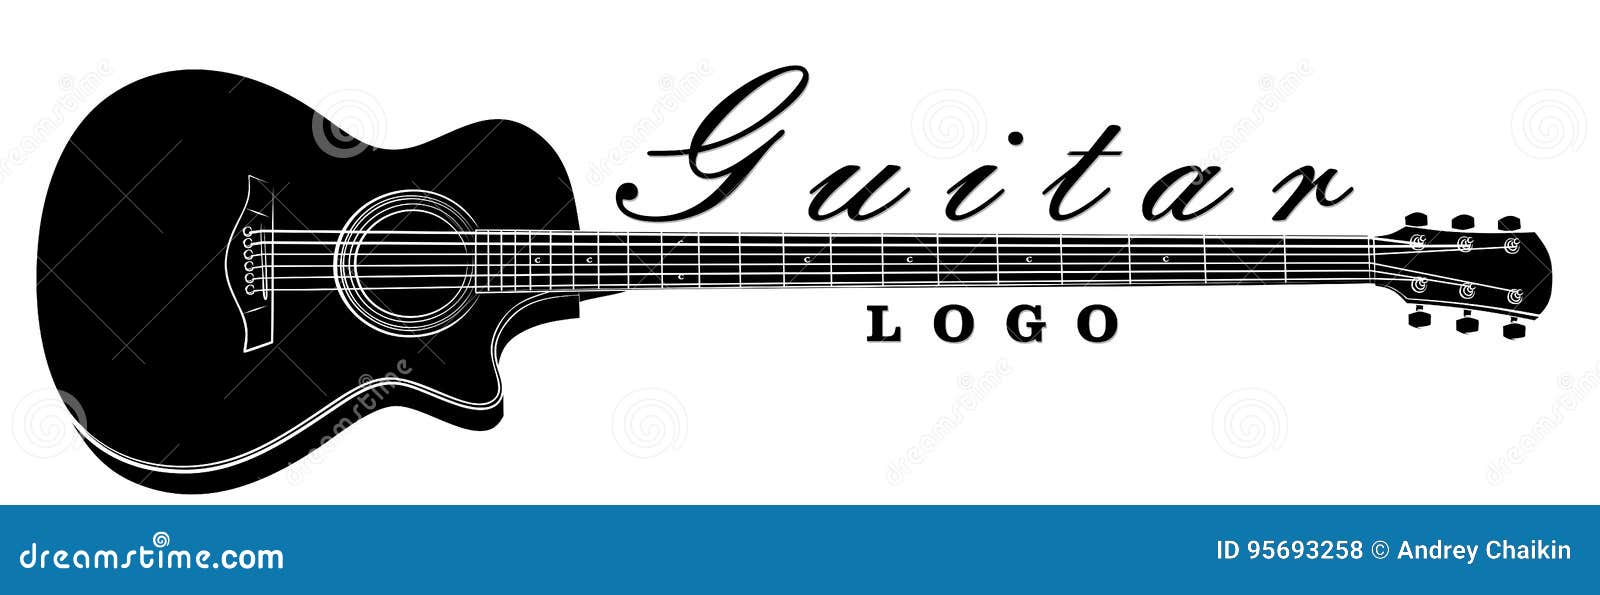 Gitarren Logo Vektor Abbildung Illustration Von Zeichnung